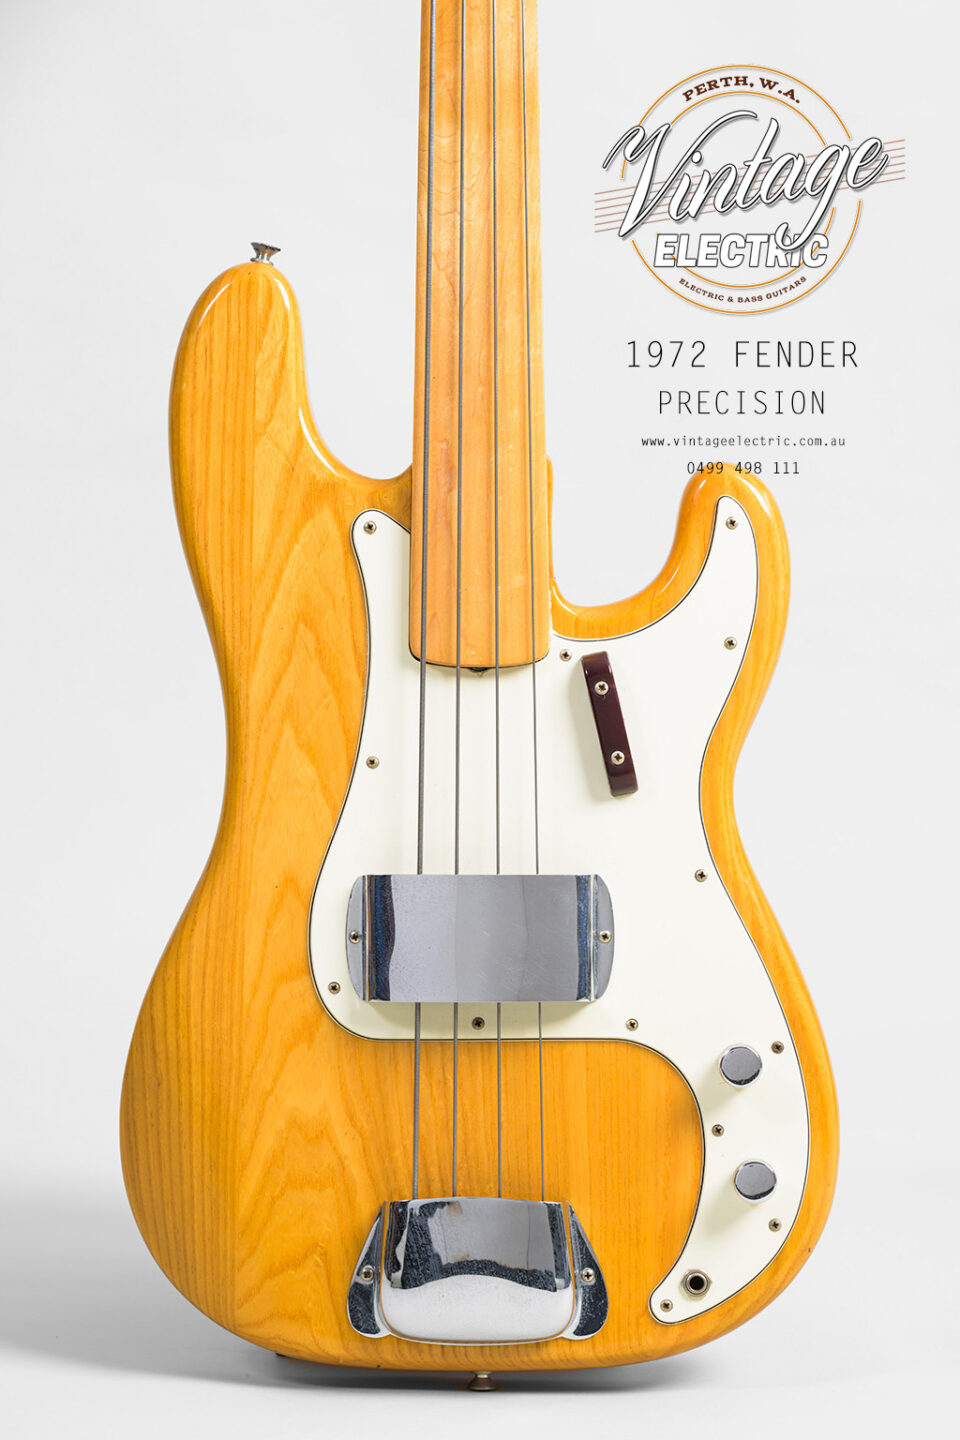 1972 Fender Precision Body